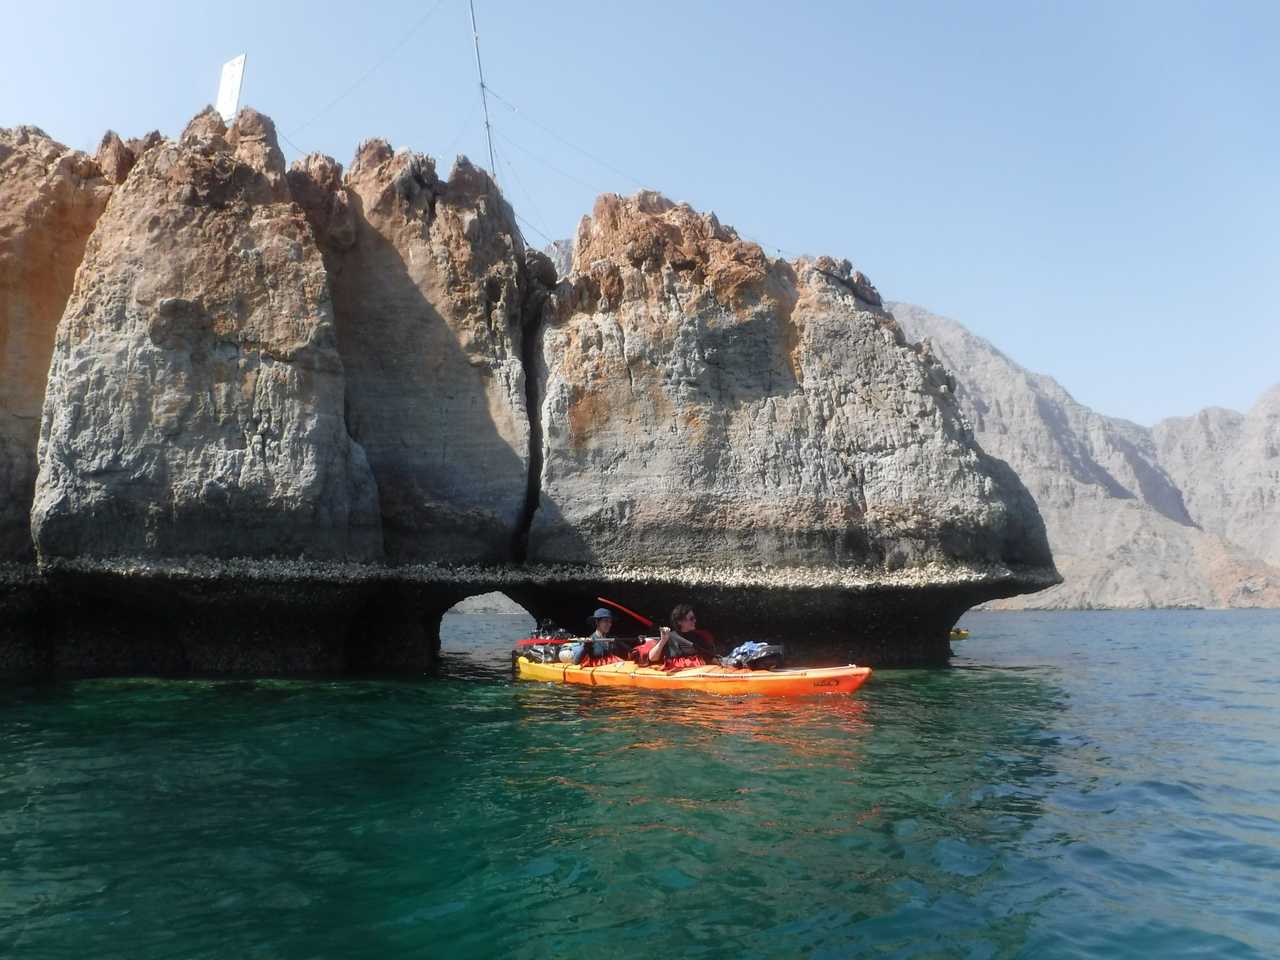 Grotte sous marine, passage secret en kayak